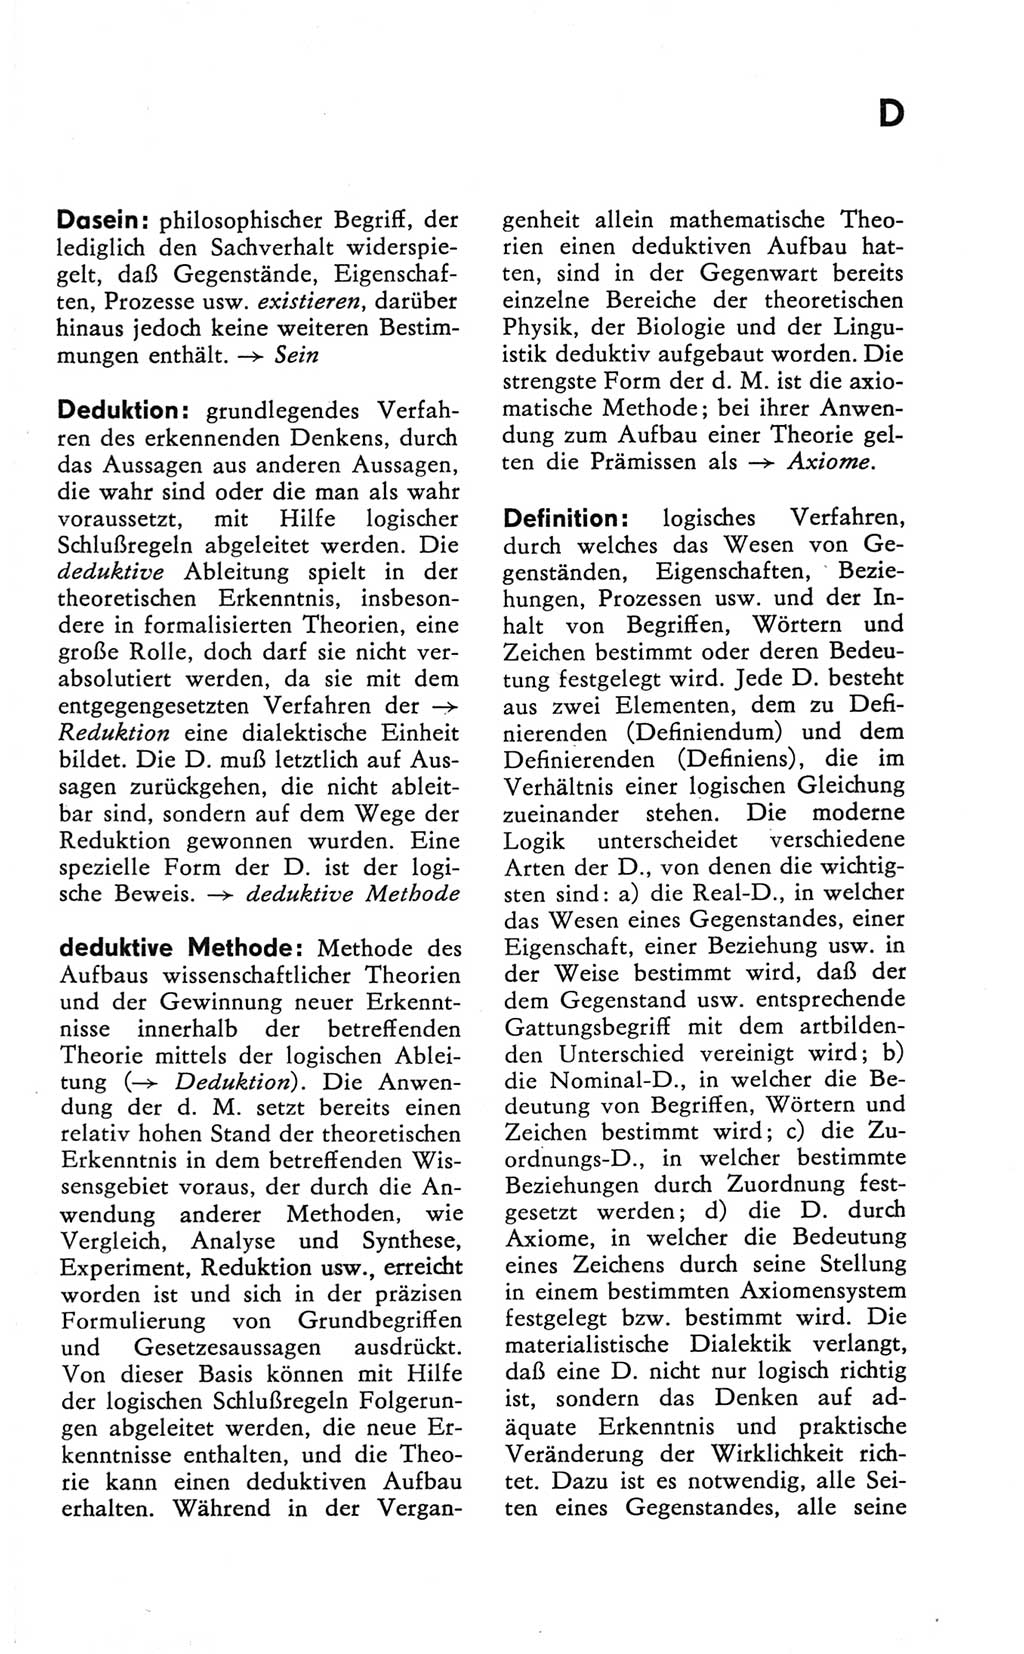 Kleines Wörterbuch der marxistisch-leninistischen Philosophie [Deutsche Demokratische Republik (DDR)] 1981, Seite 65 (Kl. Wb. ML Phil. DDR 1981, S. 65)